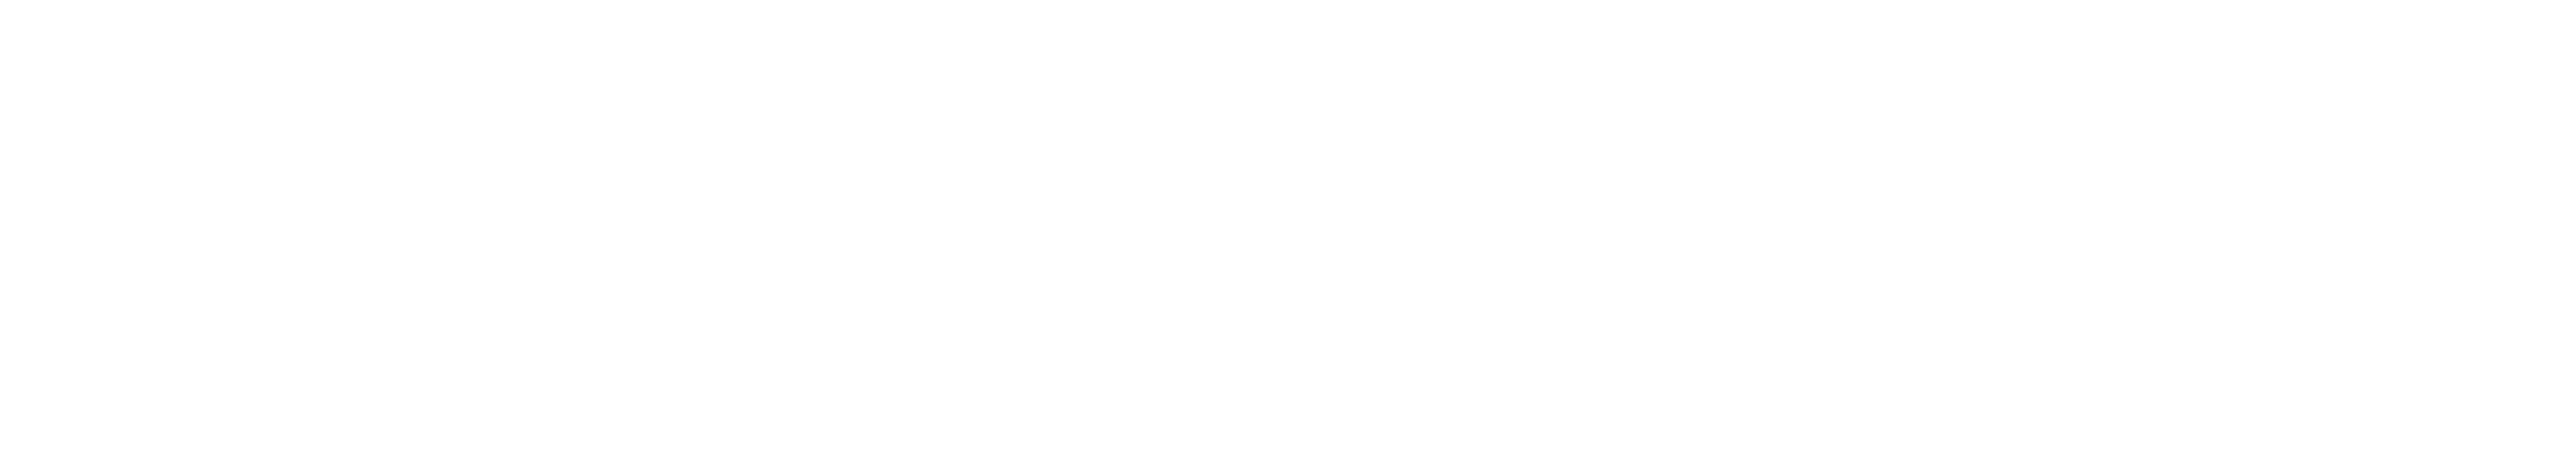 CENTRO DE INNOVACIÓN INDUSTRIAL PARA EL SECTOR AUTOMOTRIZ TLALNEPANTLA